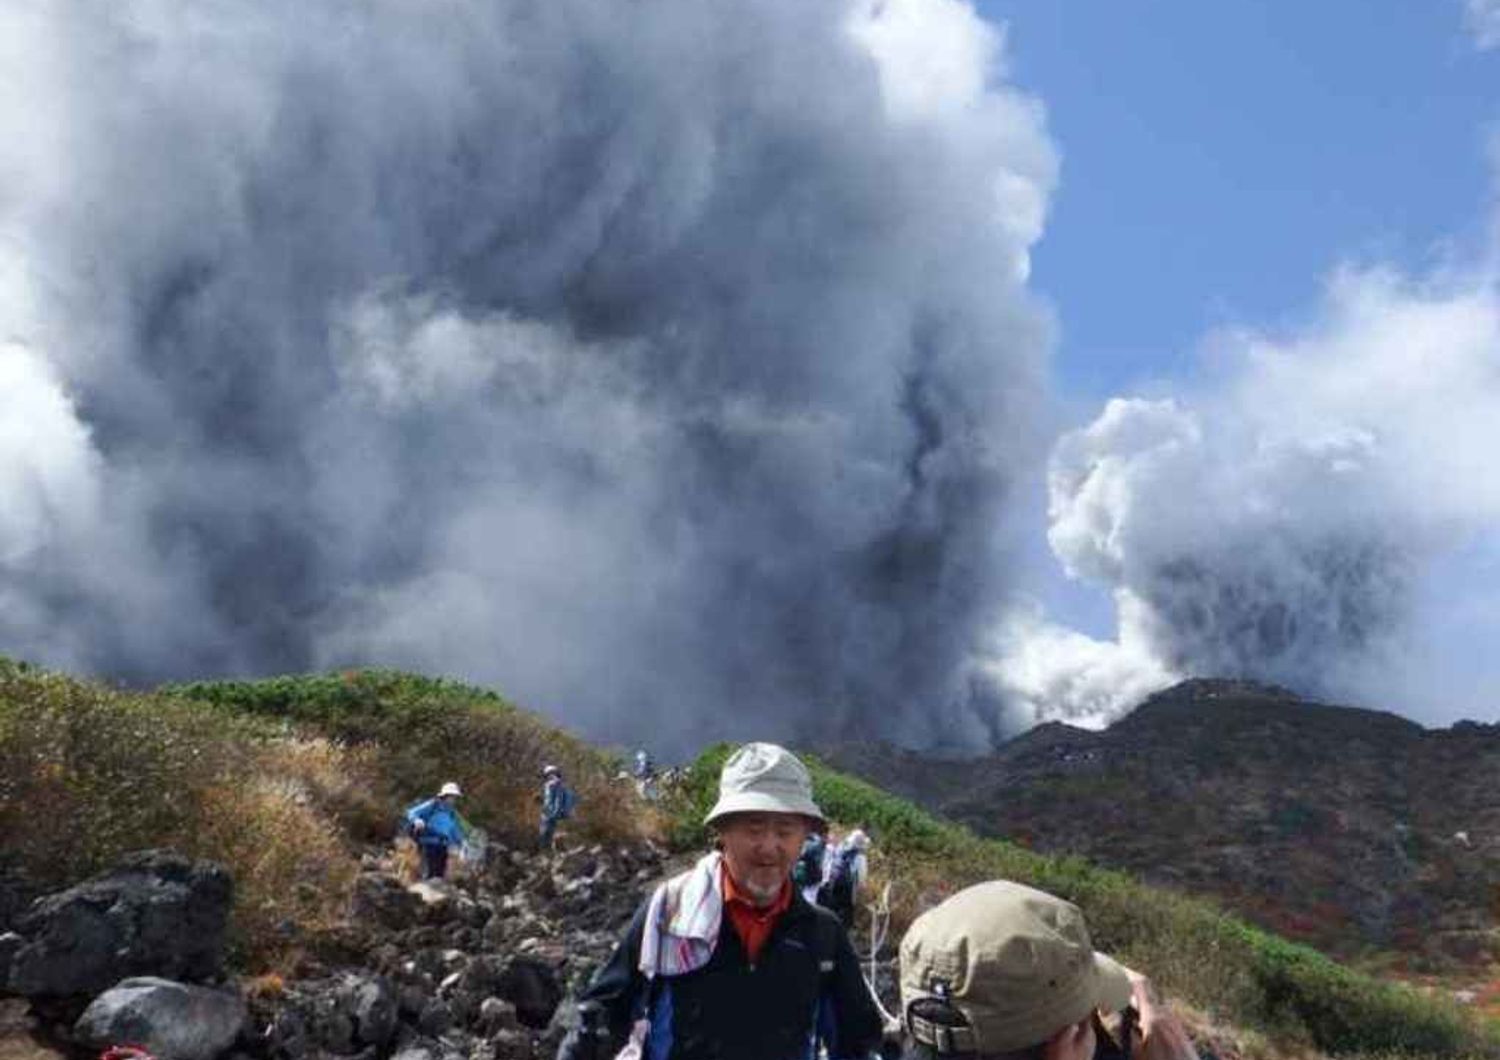 Giappone: 30 escursionisti feriti gravi vicino a vulcano Ontake - Video